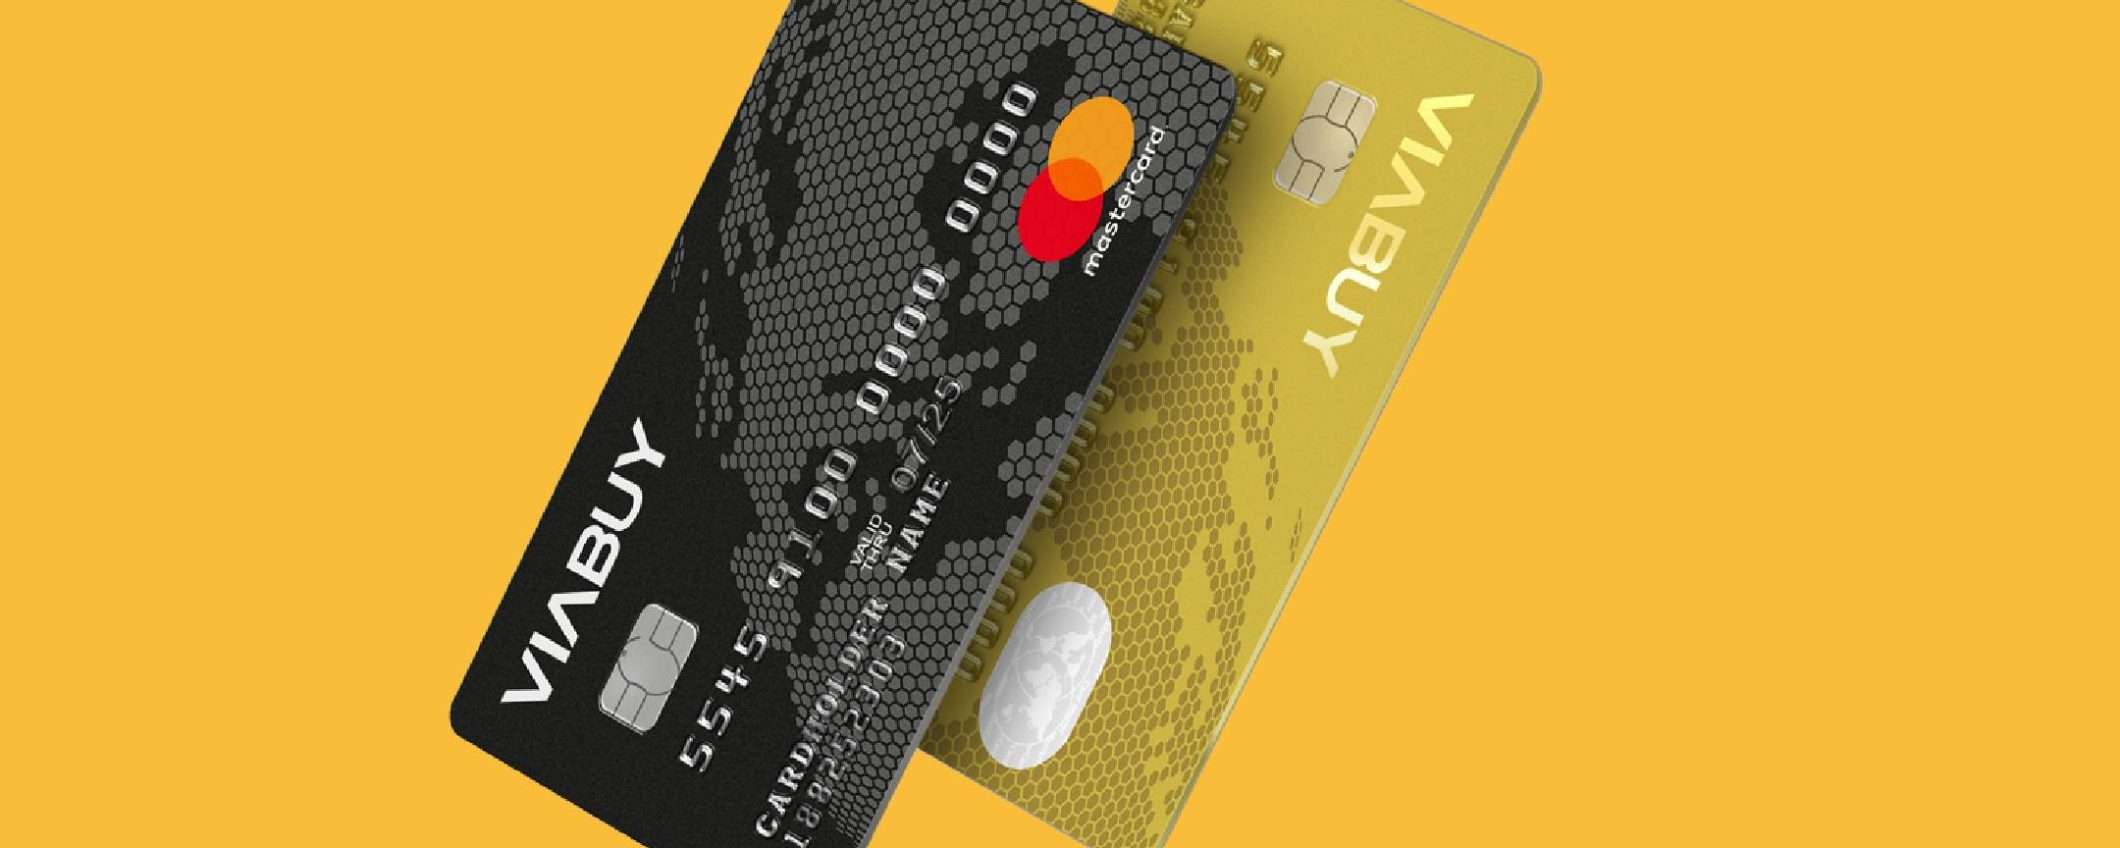 VIABUY: la Carta Prepaid Mastercard senza verifiche di solvibilità